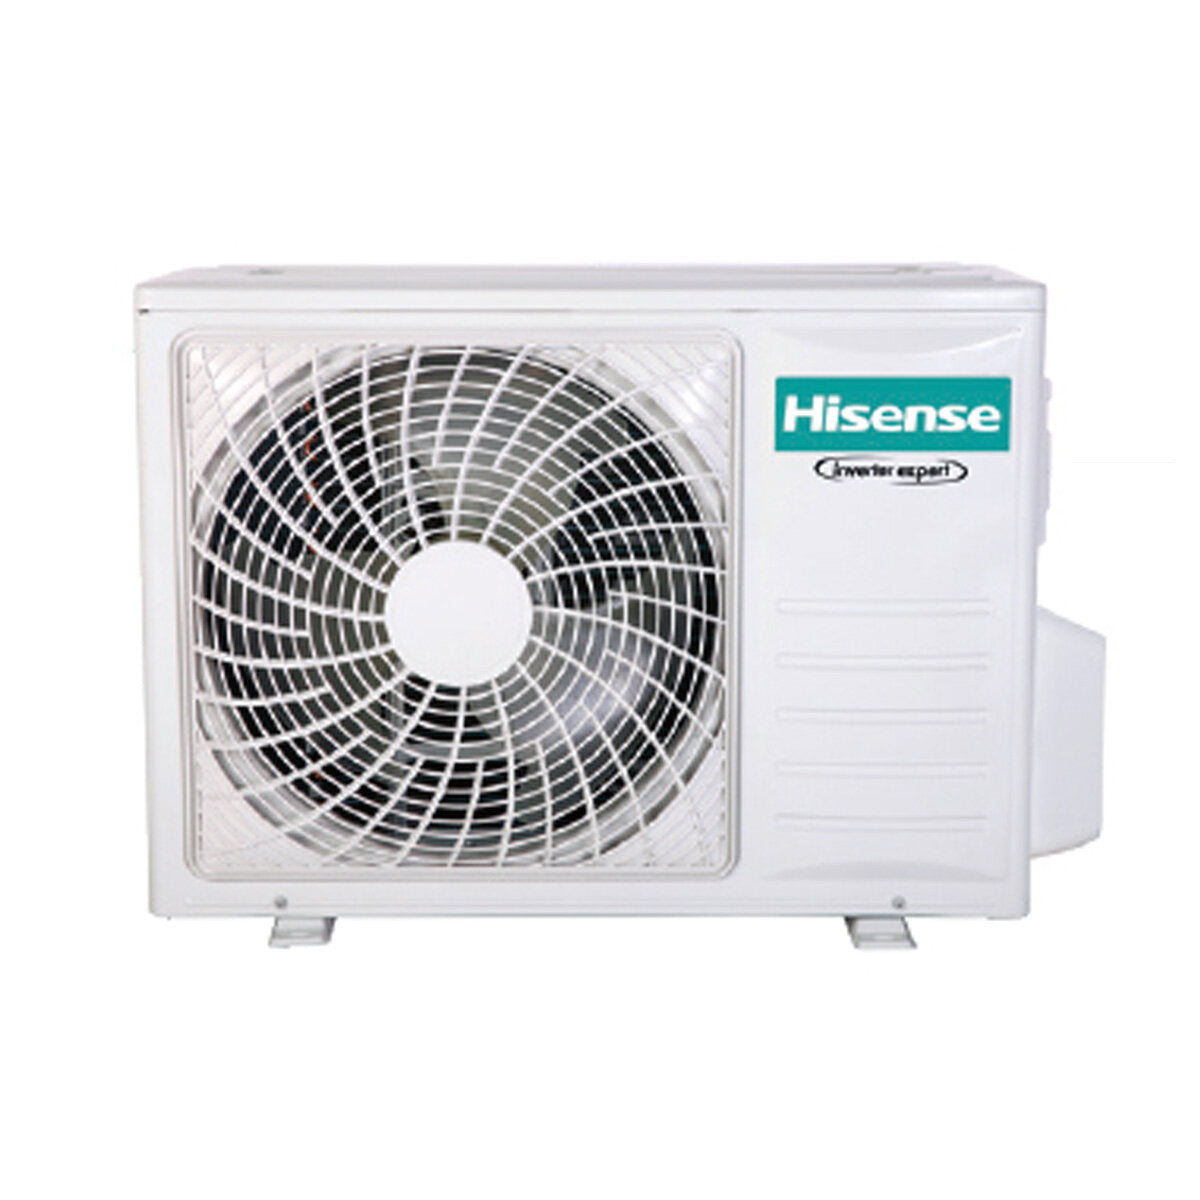 Hisense Hi-Comfort Trial Split Klimaanlage 7000+9000+9000 BTU Inverter A++ WLAN Außengerät 6,3 kW